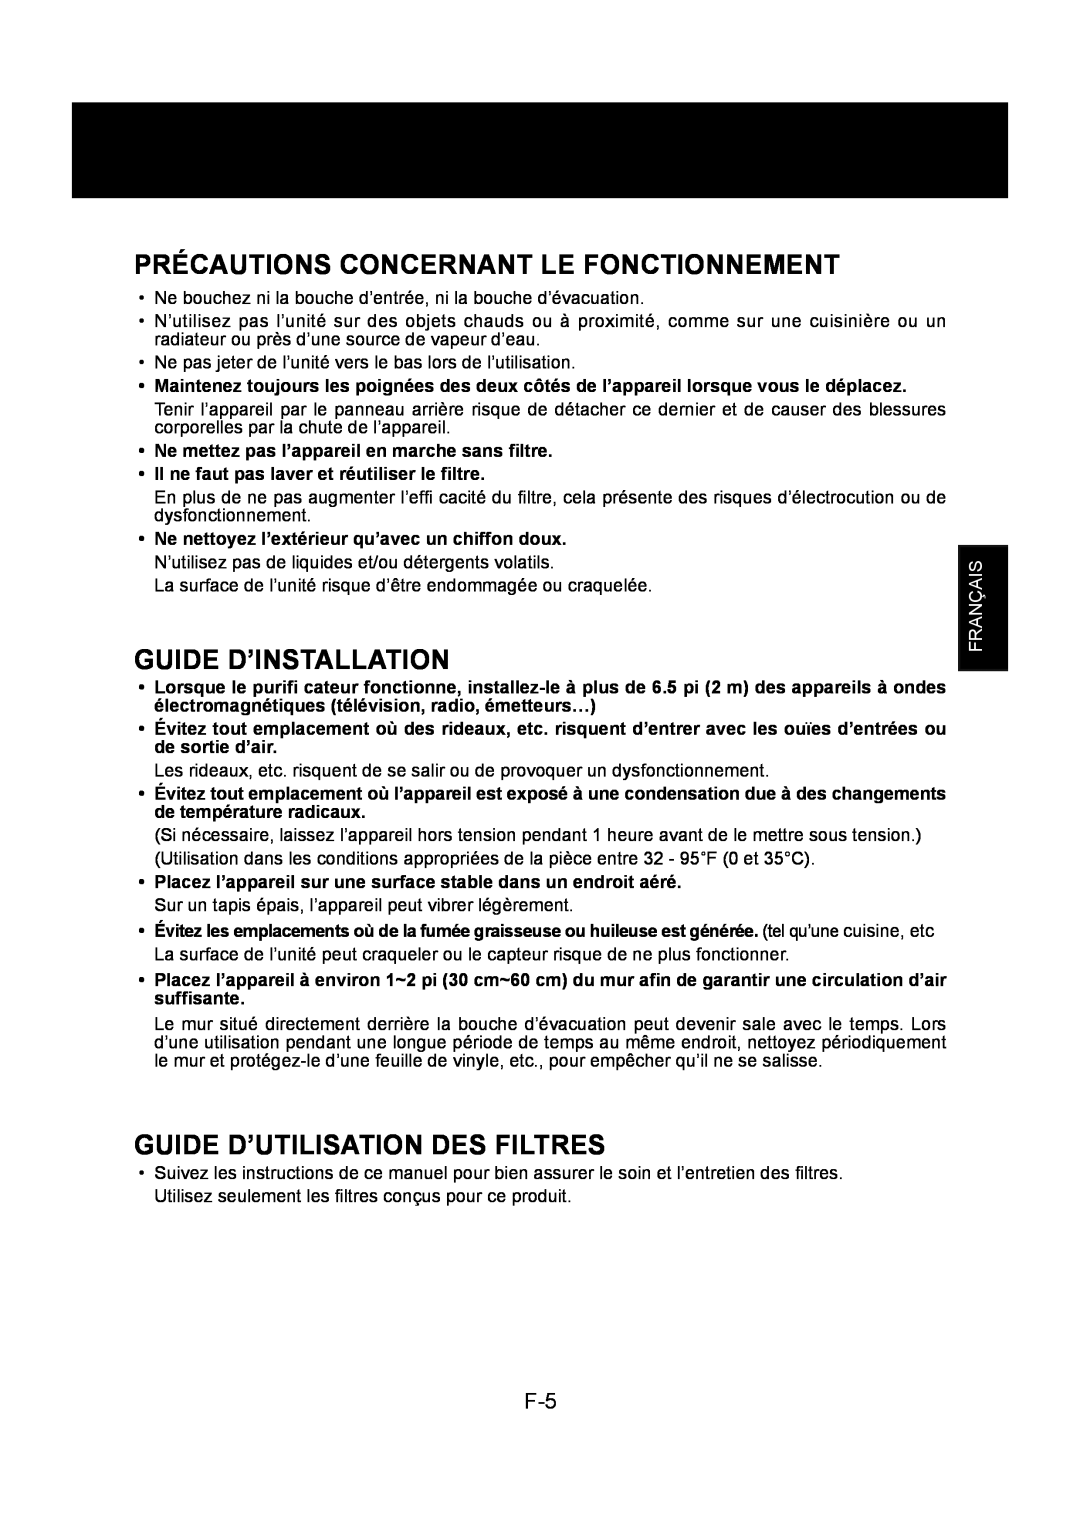 Sharp FP-P30U Précautions Concernant Le Fonctionnement, Guide D’Installation, Guide D’Utilisation Des Filtres, Français 